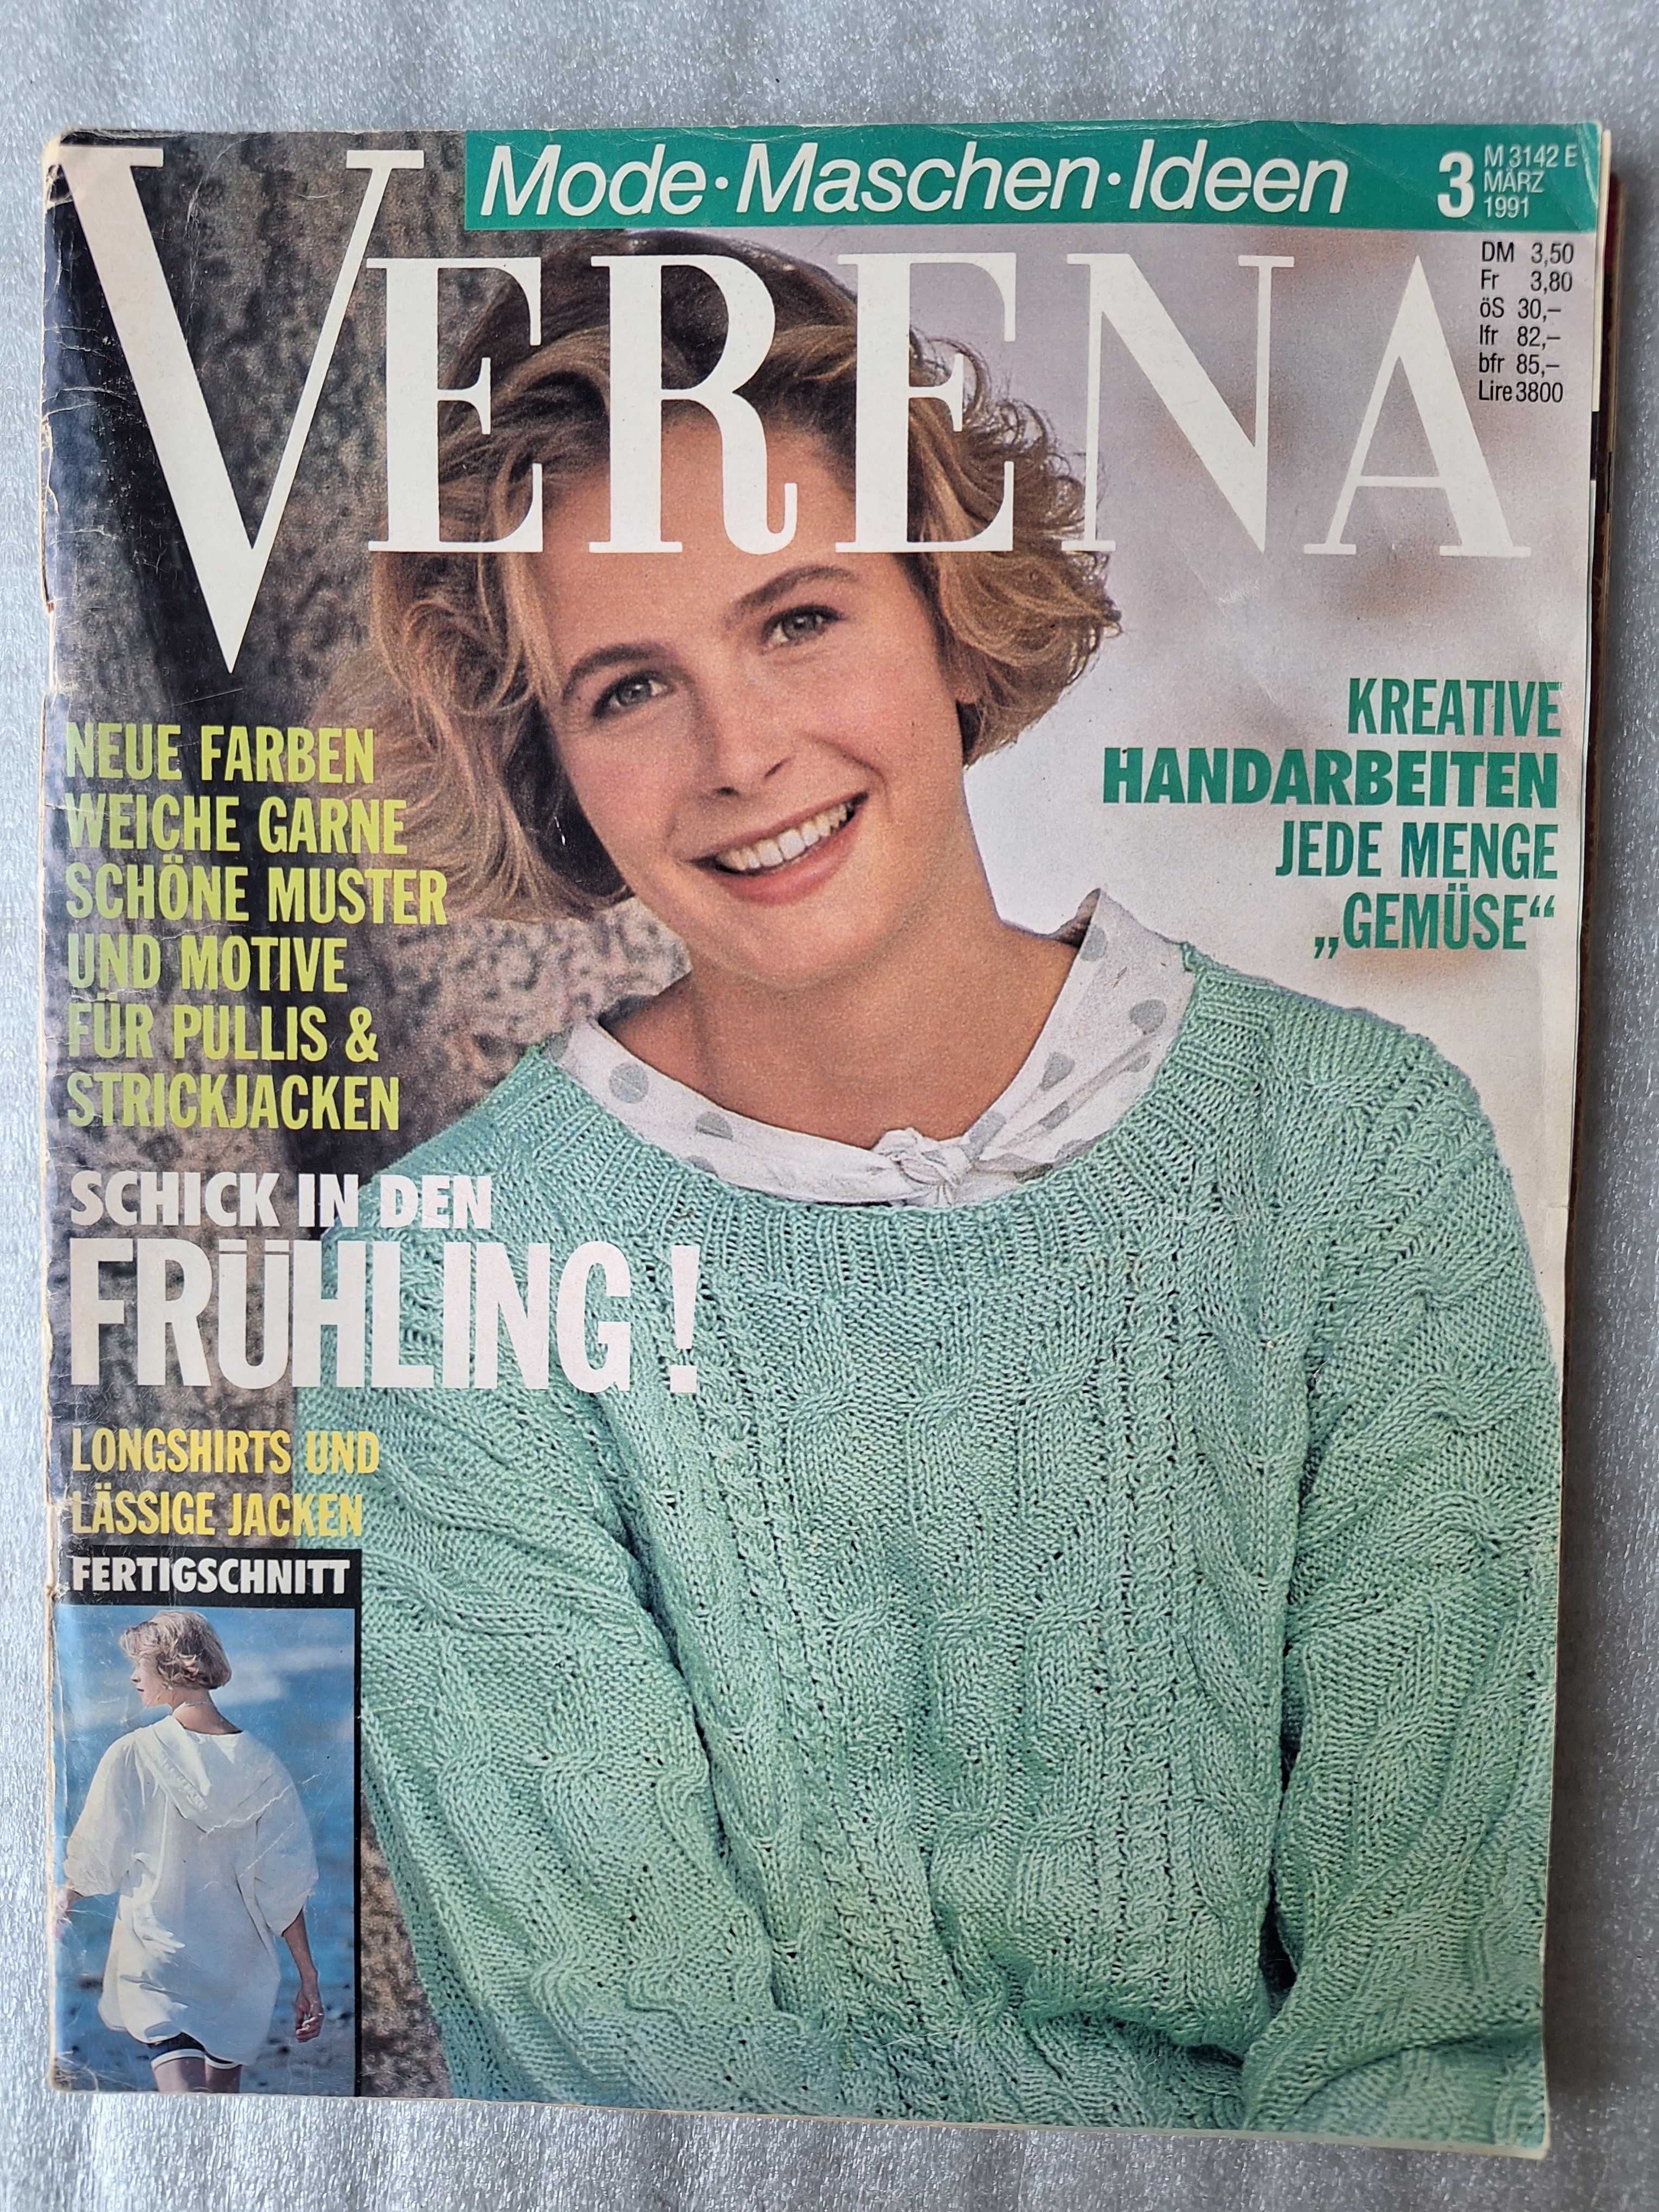 Списания Verena 1990 - 1993г.